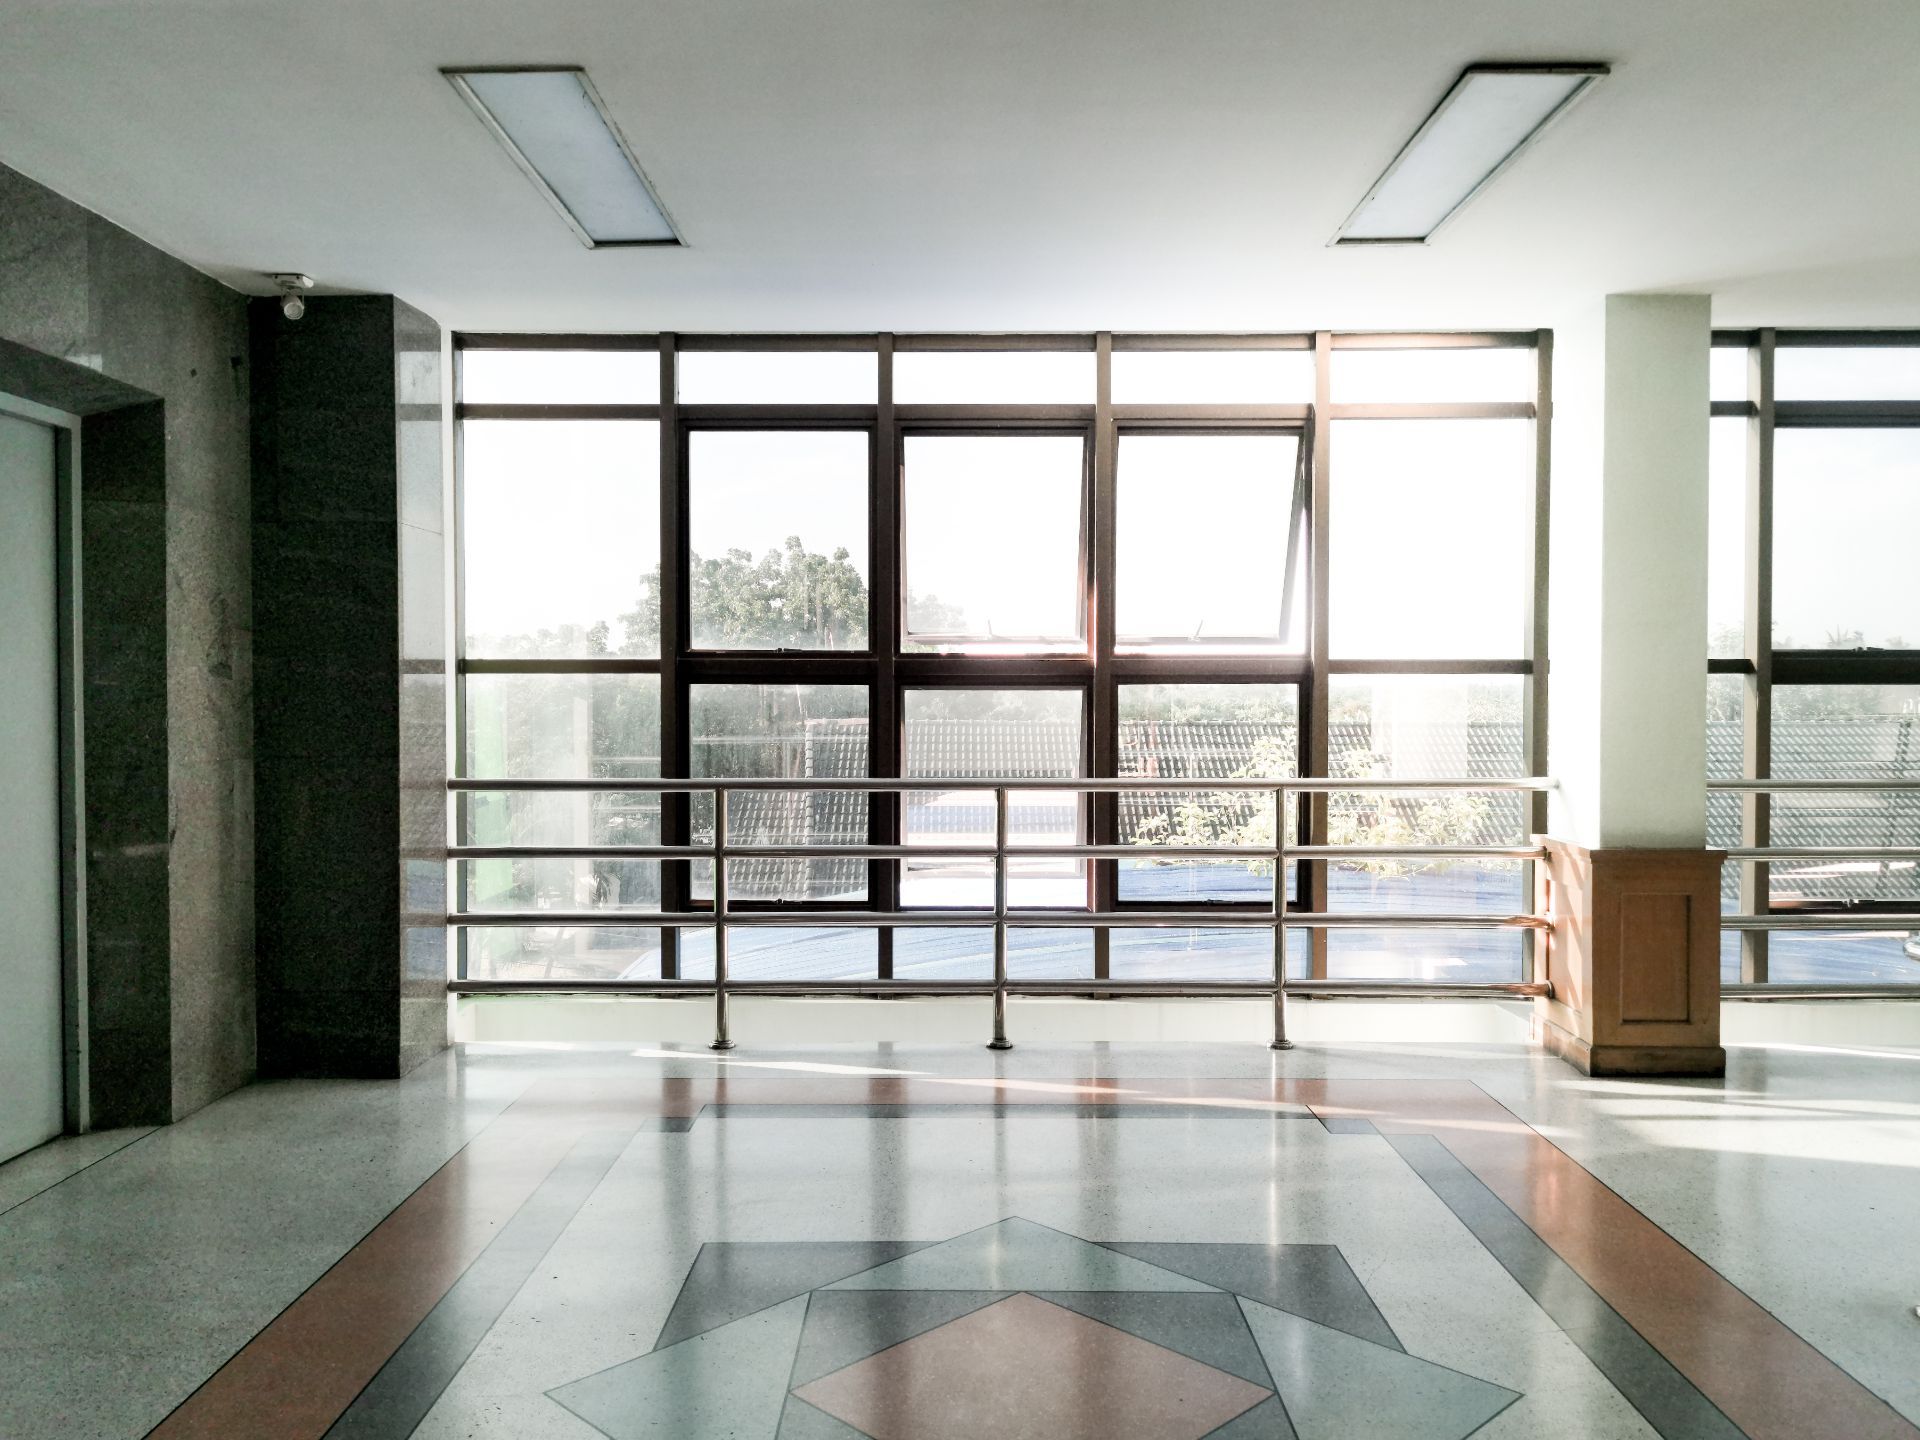 Vinyl doors in a commercial building